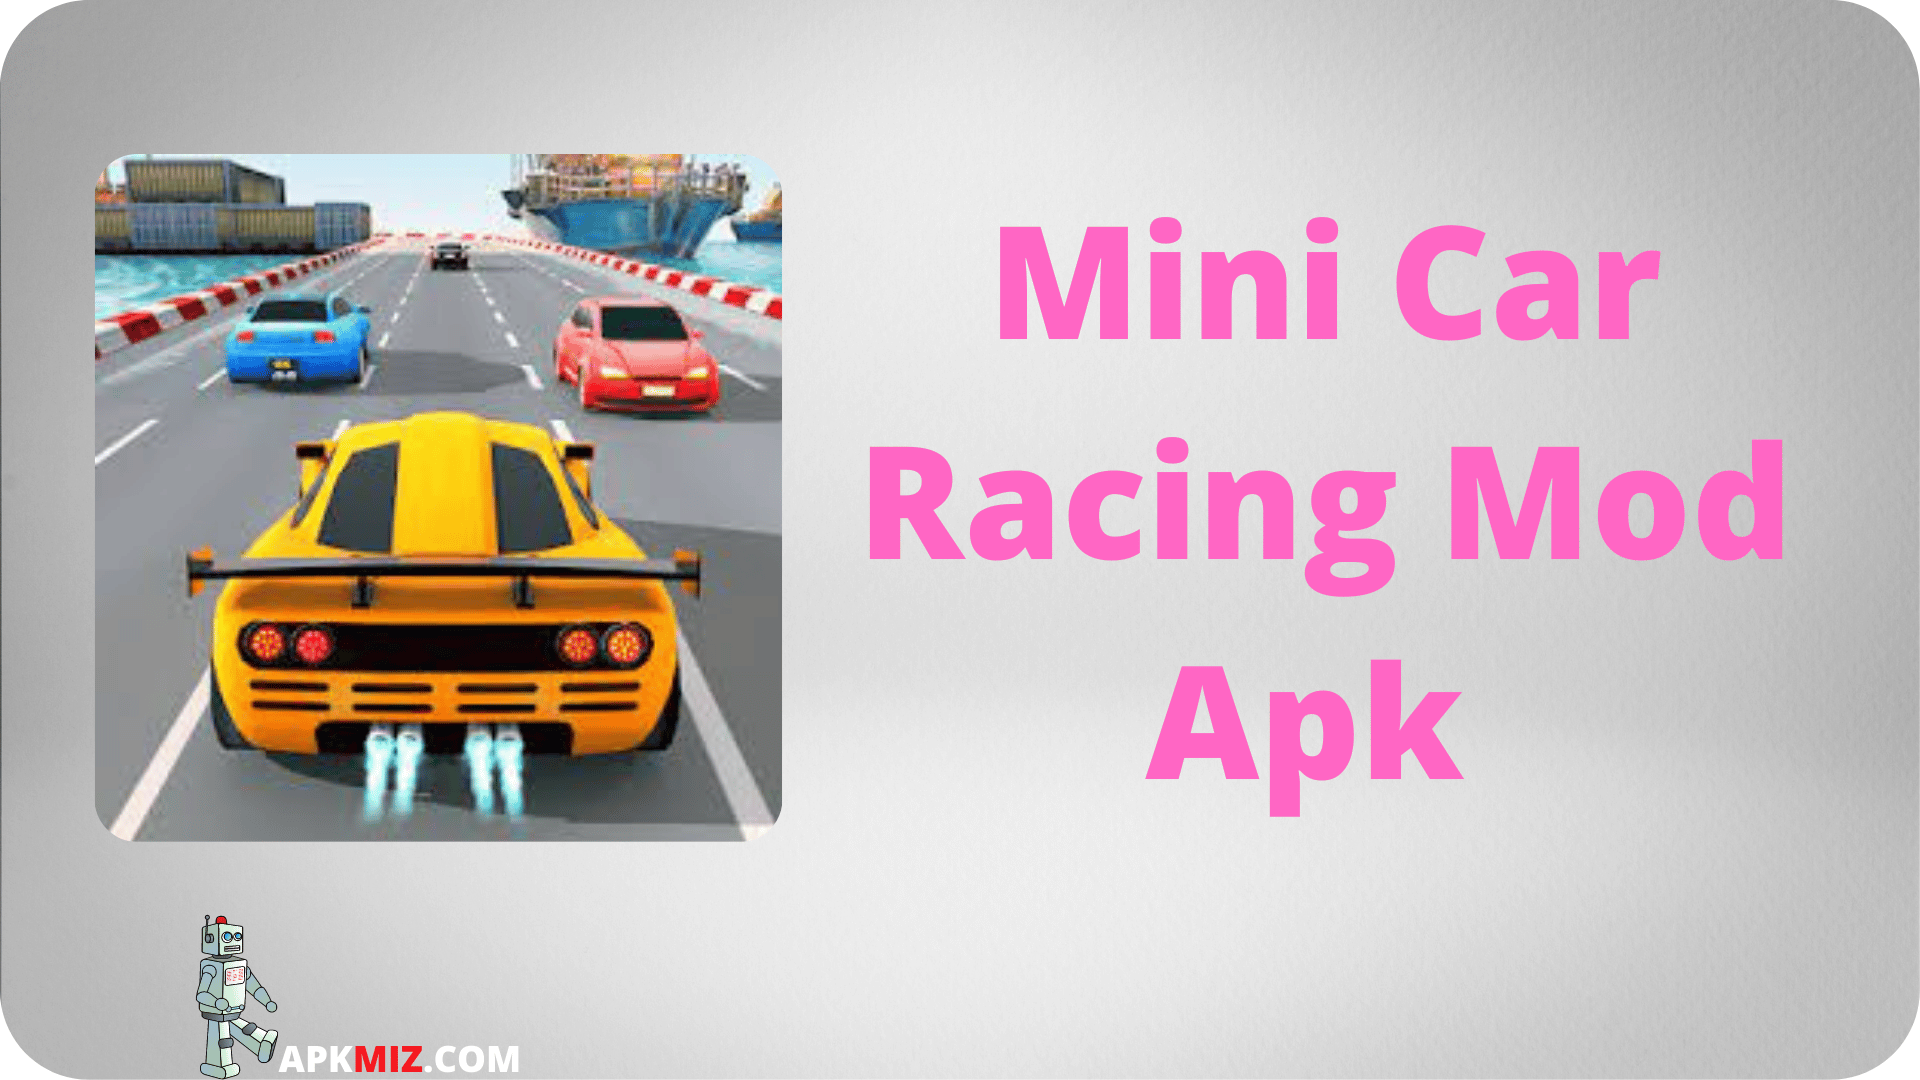 Mini Car Racing Mod Apk